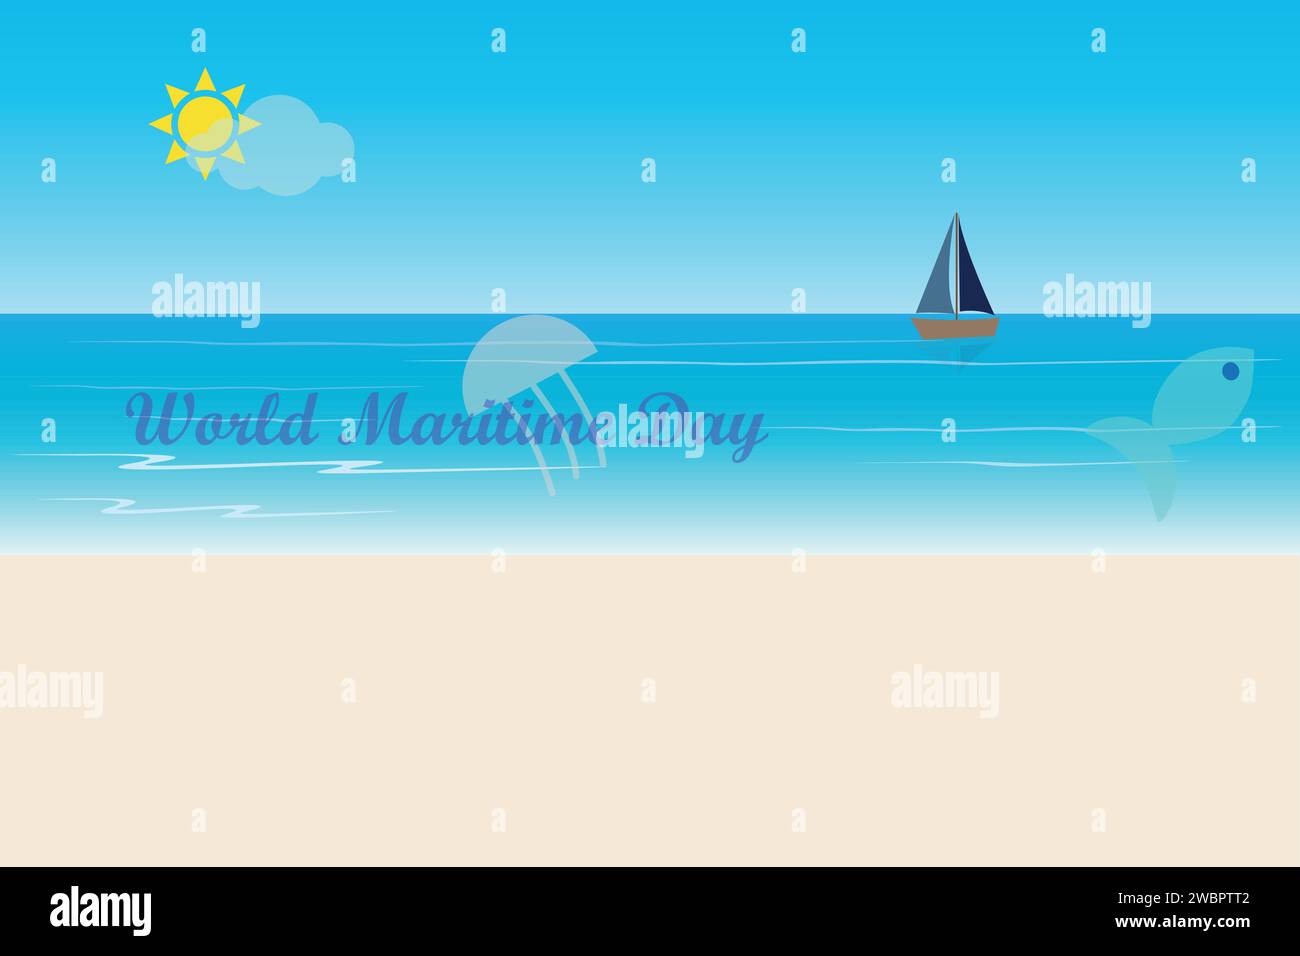 Paesaggio marino con barca, sabbia, pesci e meduse e il testo giornata marittima mondiale Illustrazione Vettoriale